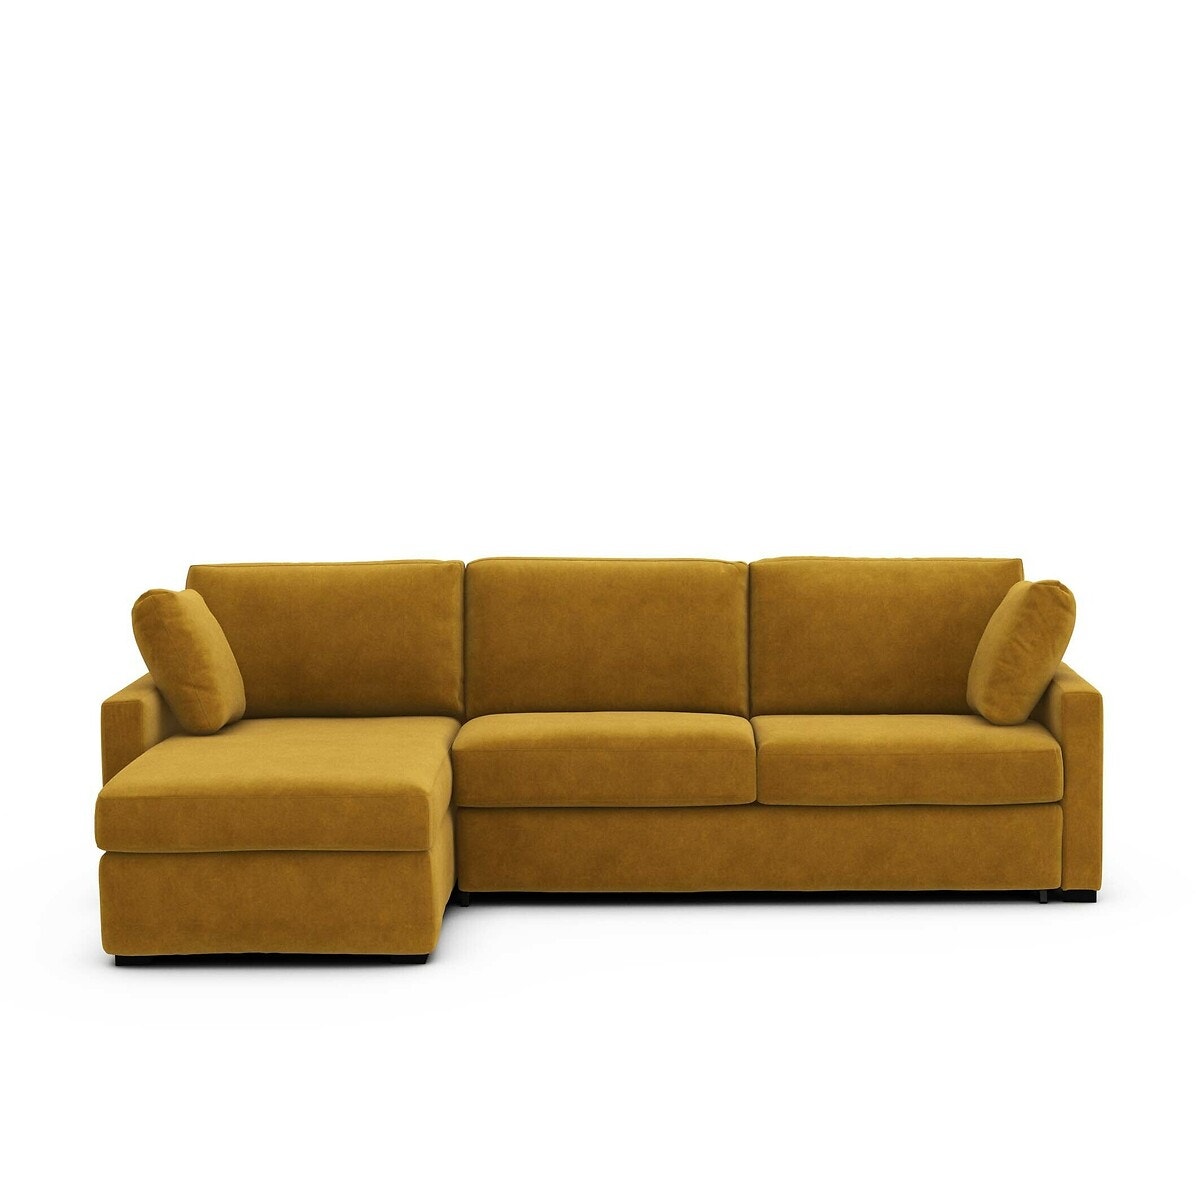 Σπίτι > Έπιπλα > Καθιστικό > Καναπέδες > Γωνιακοί καναπέδες Γωνιακός καναπές-κρεβάτι από βελούδο με λάτεξ στρώμα Μ160xΠ265xΥ85cm